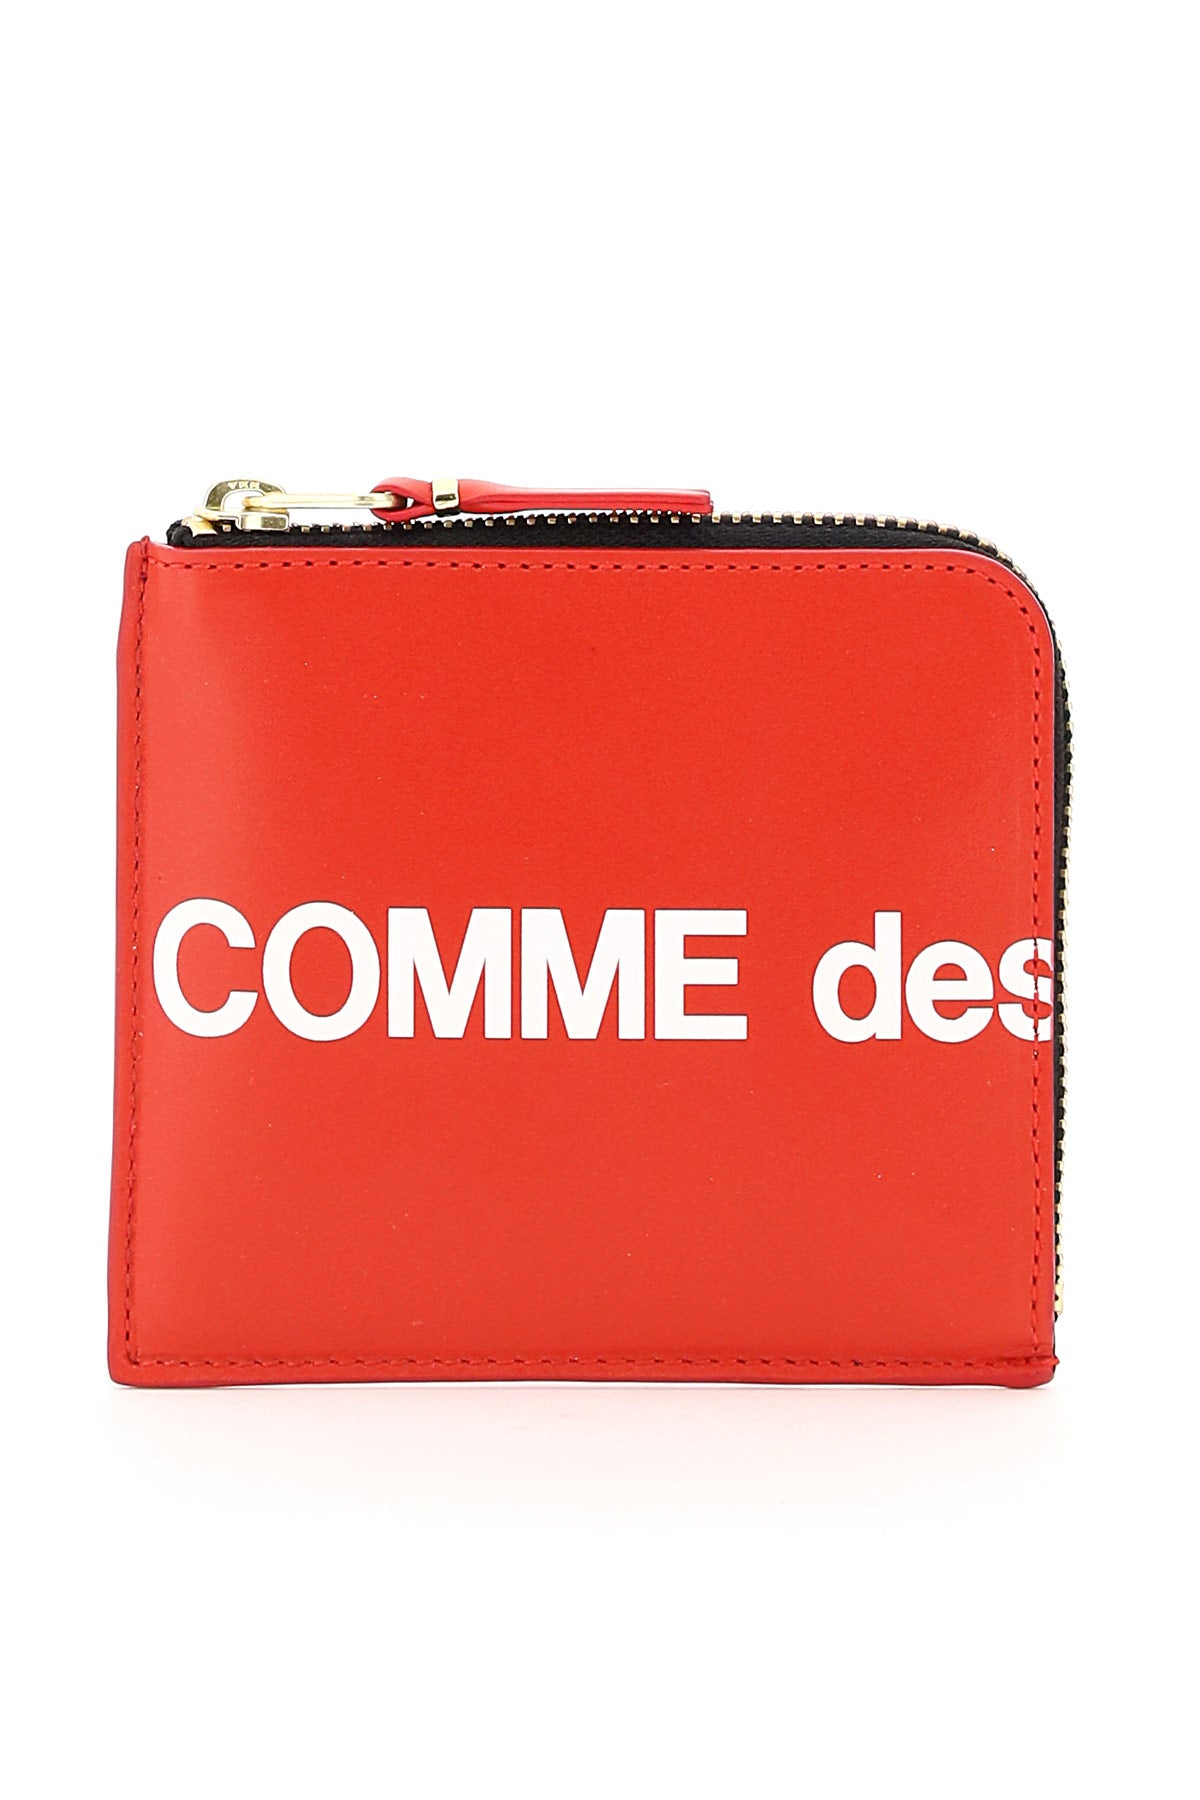 Comme Des Garcons Wallet Huge Logo Wallet - OS Rosso